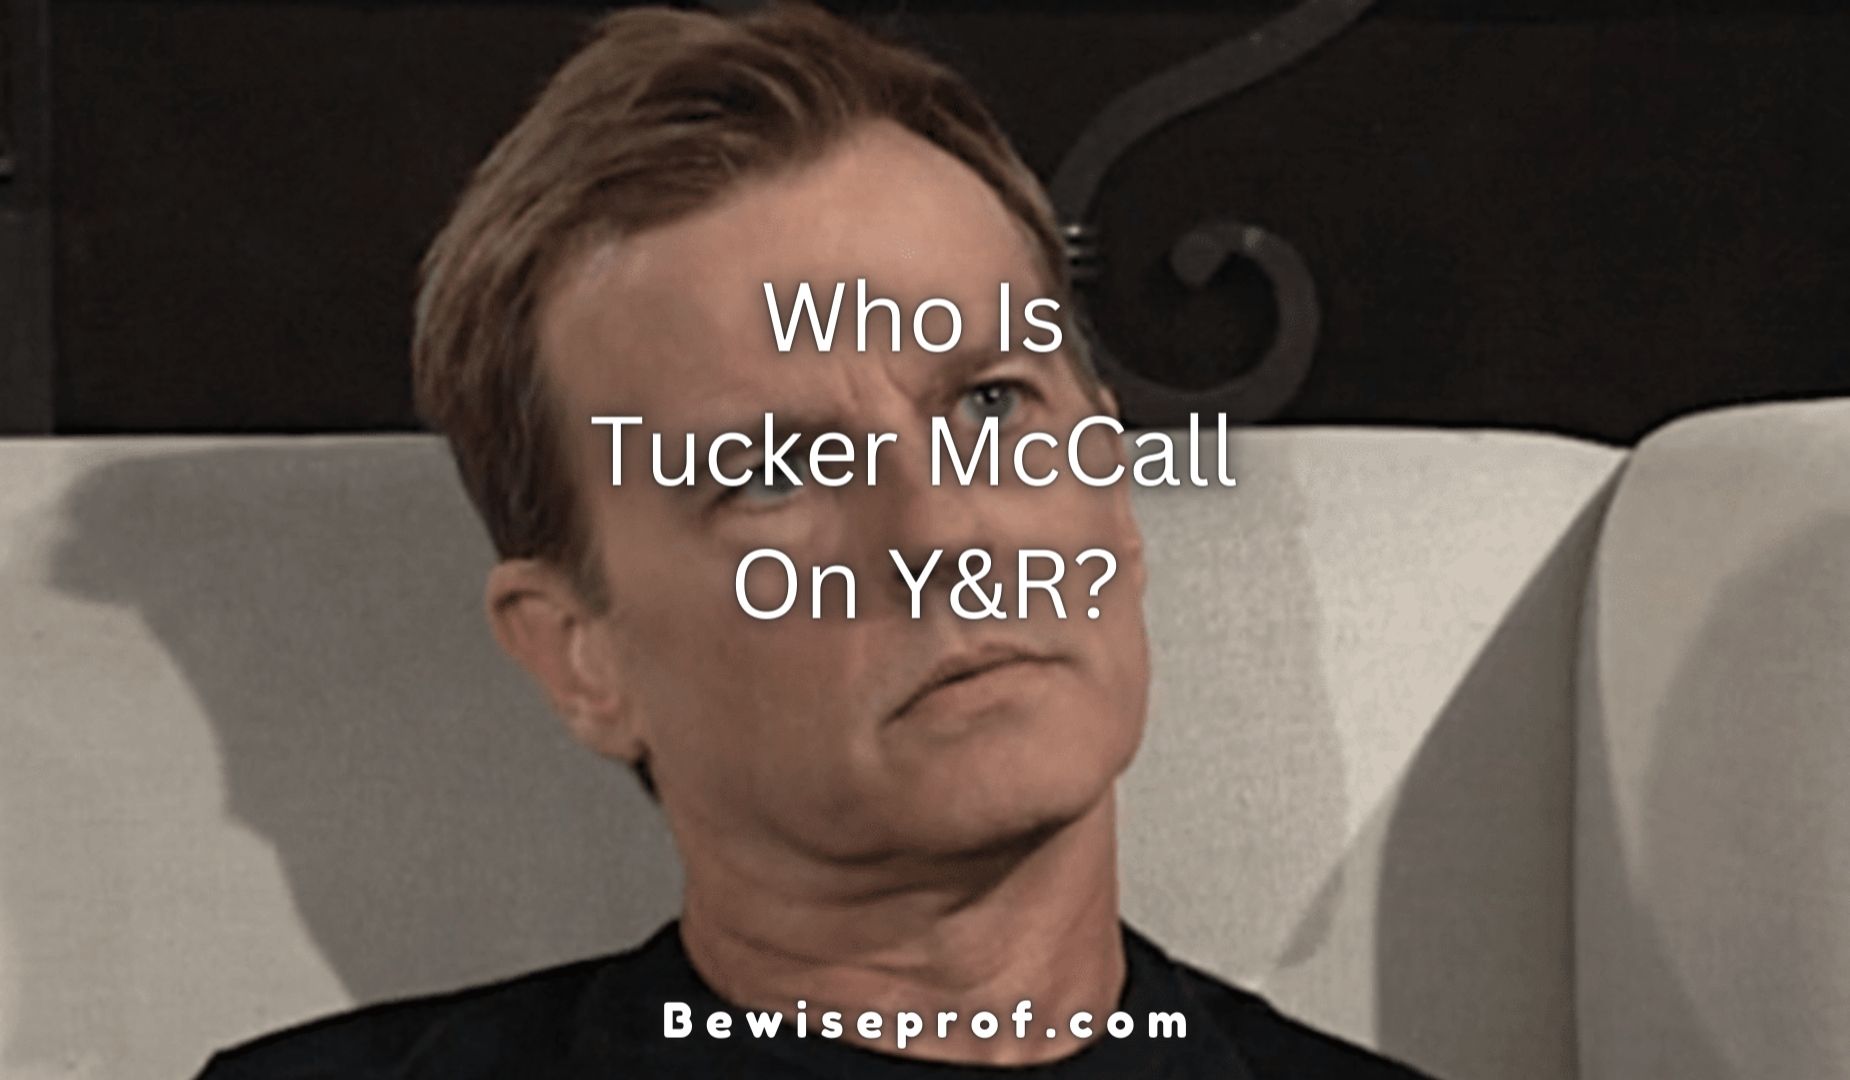 Y&R боюнча Такер Макколл деген ким?